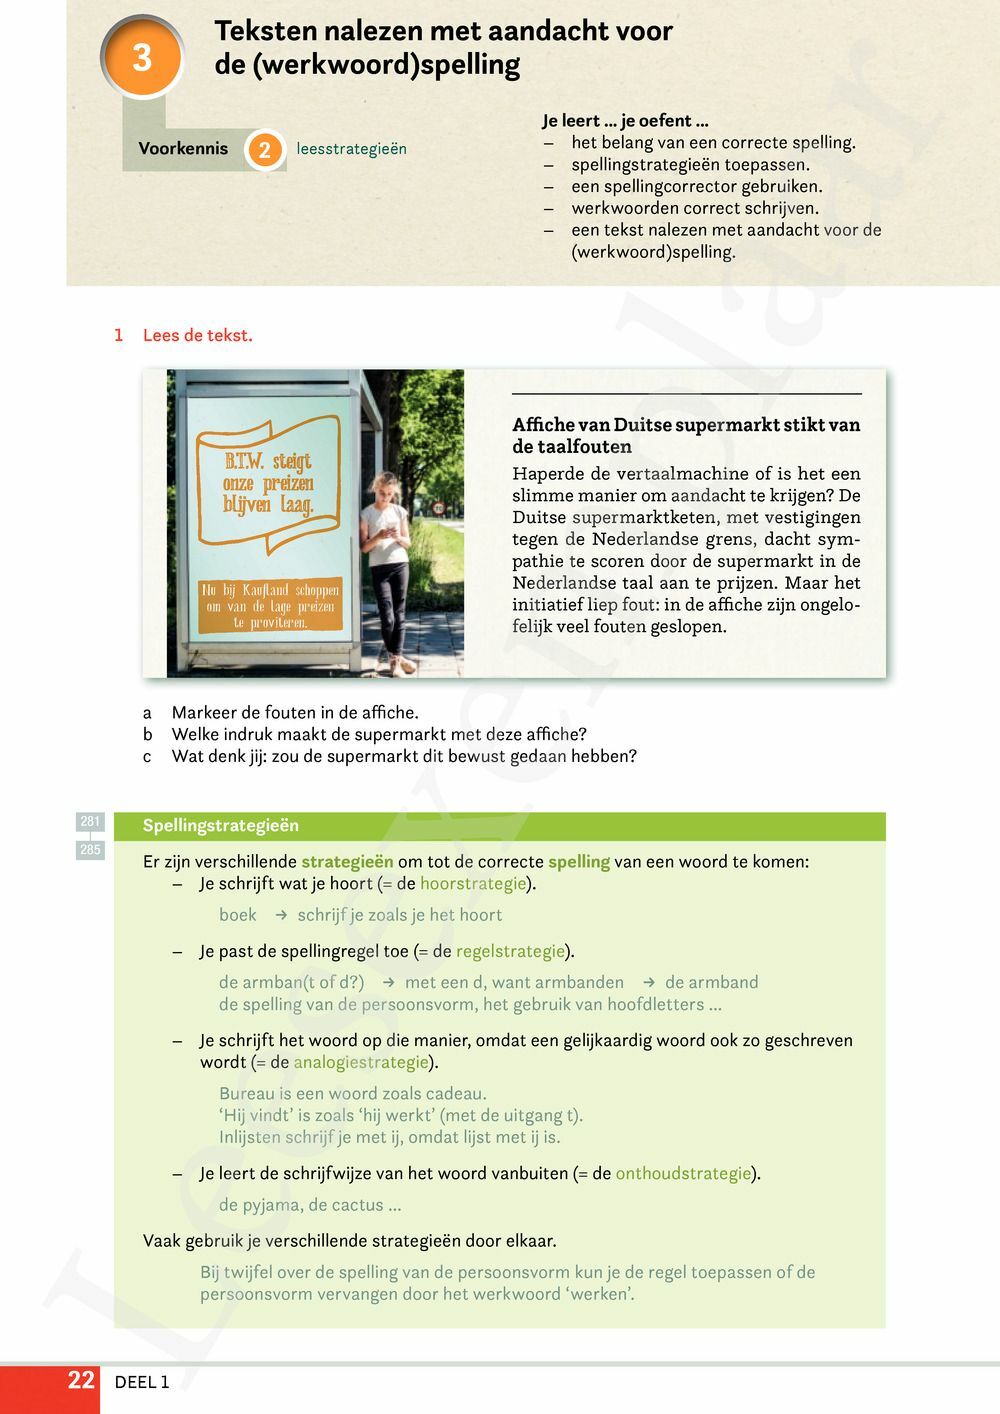 Preview: Campus Nederlands 2 Leerwerkboek Basis (incl. Pelckmans Portaal)